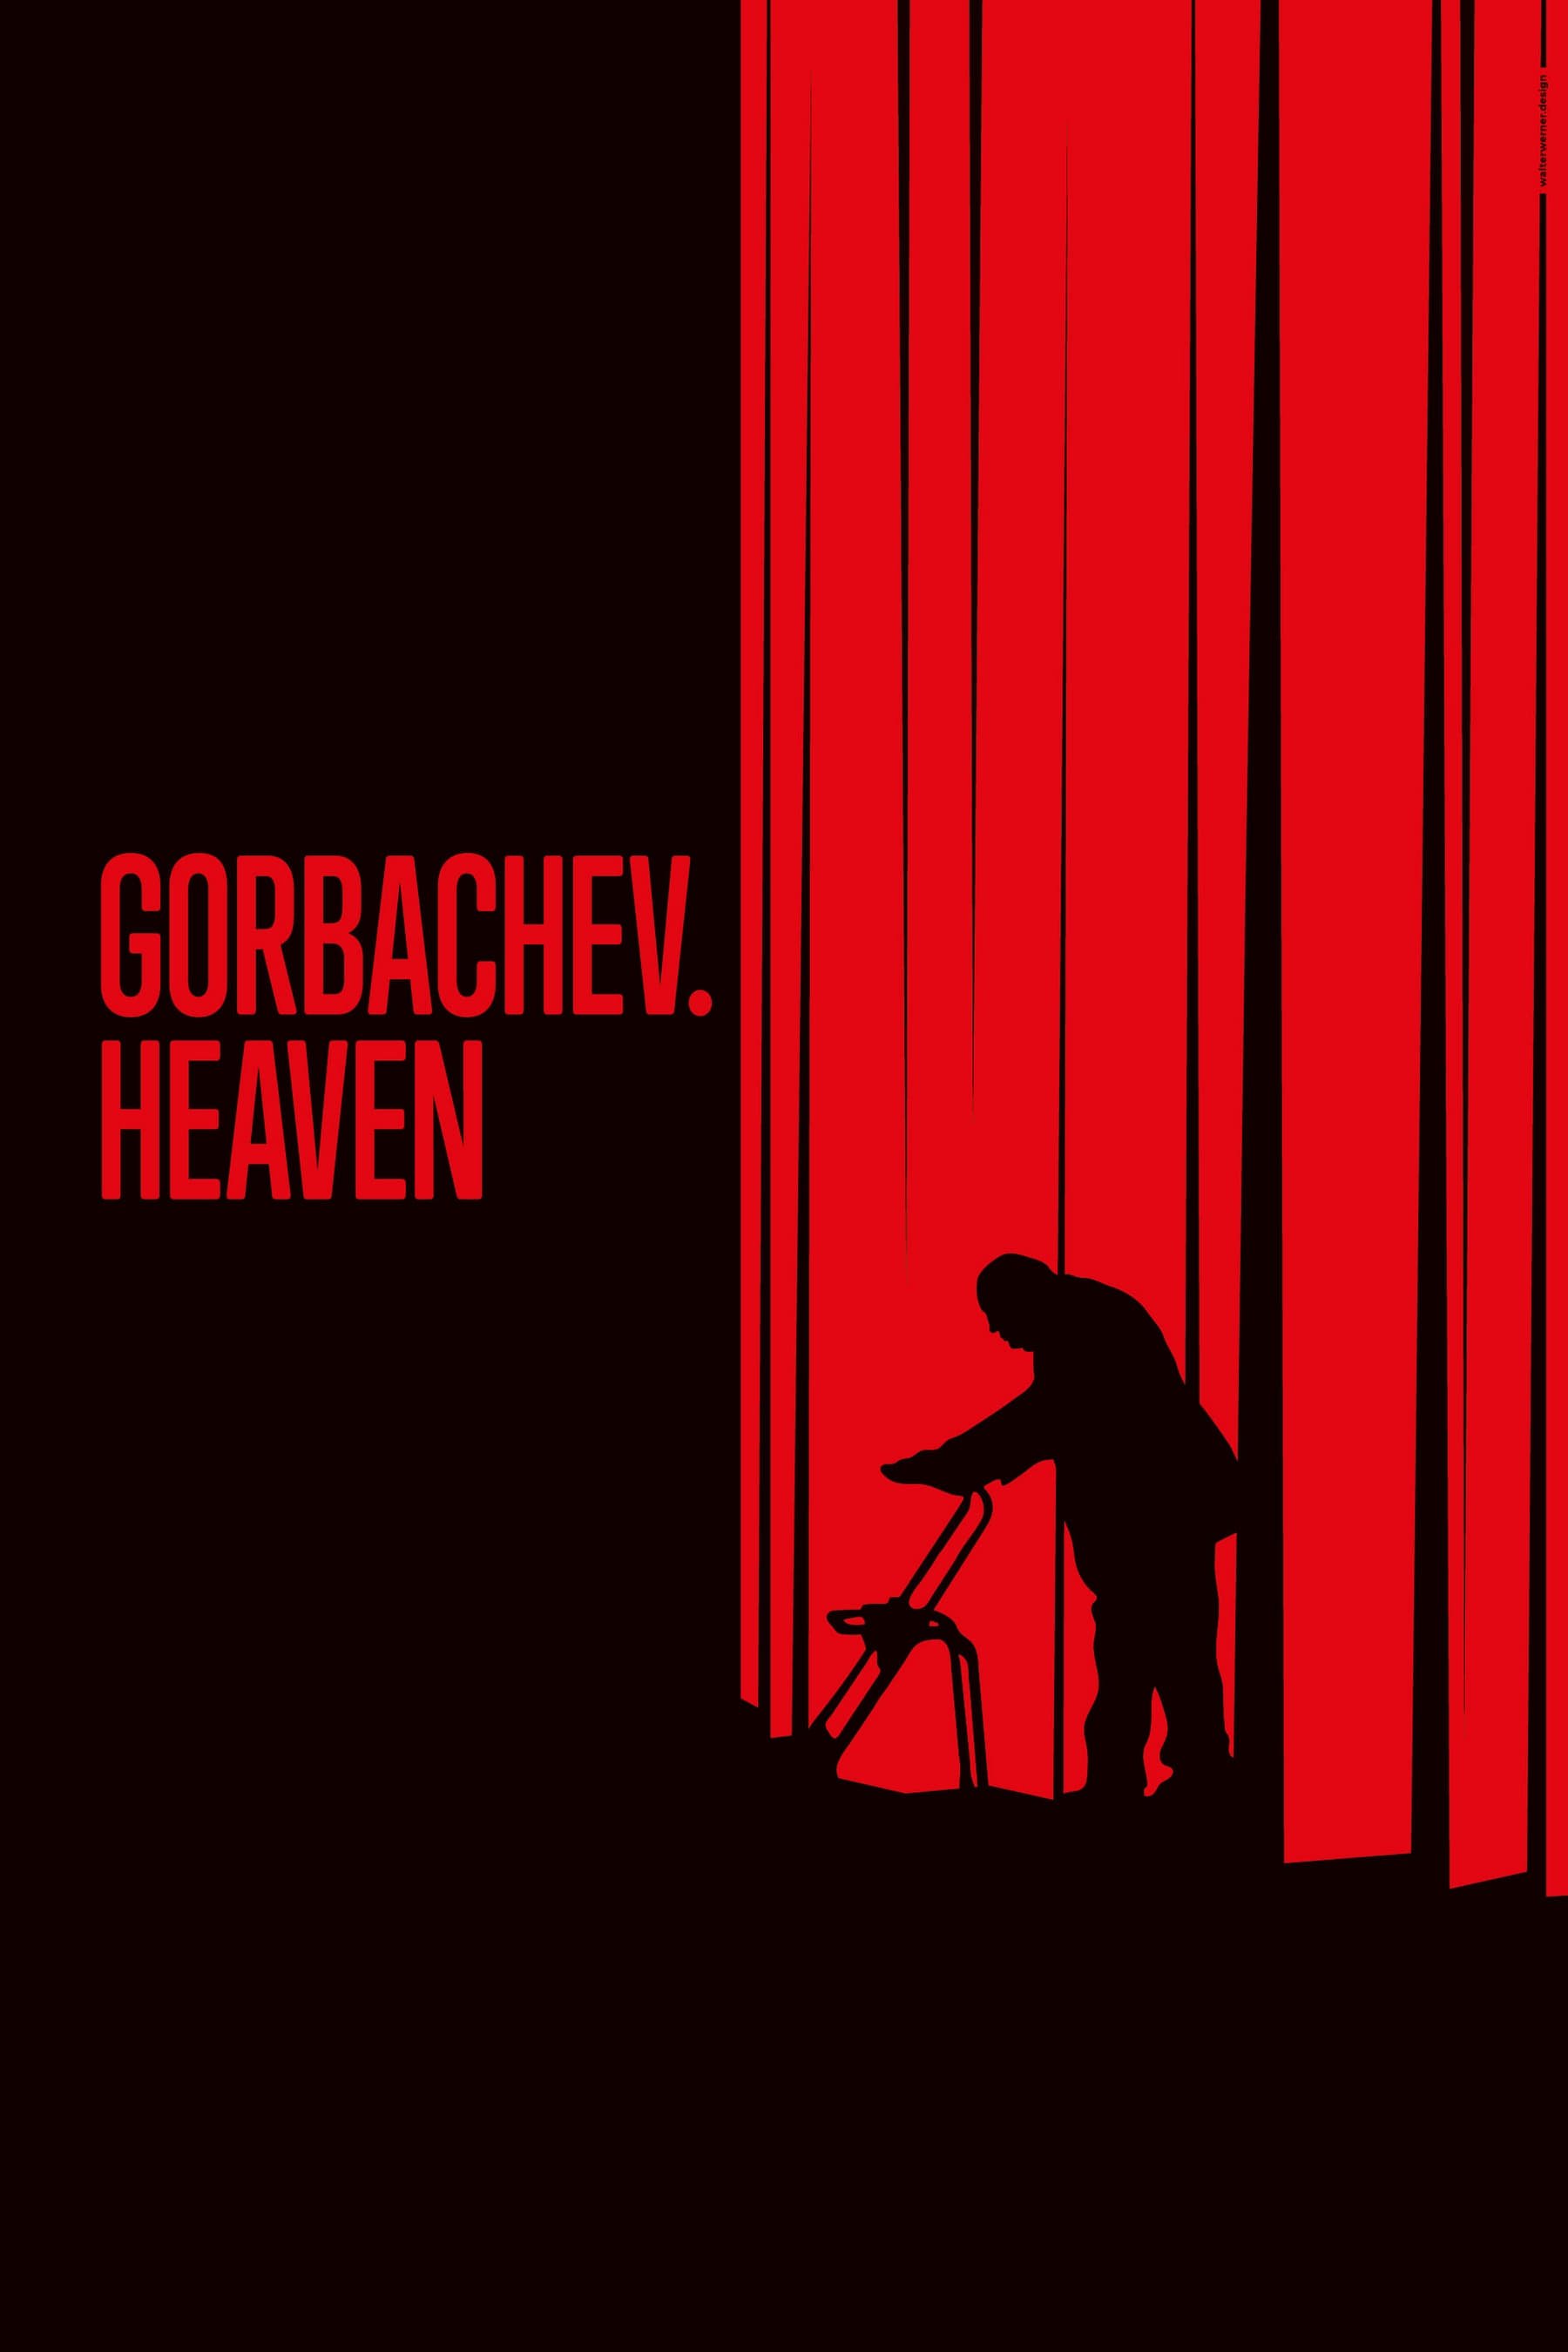 Gorbachev. Heaven